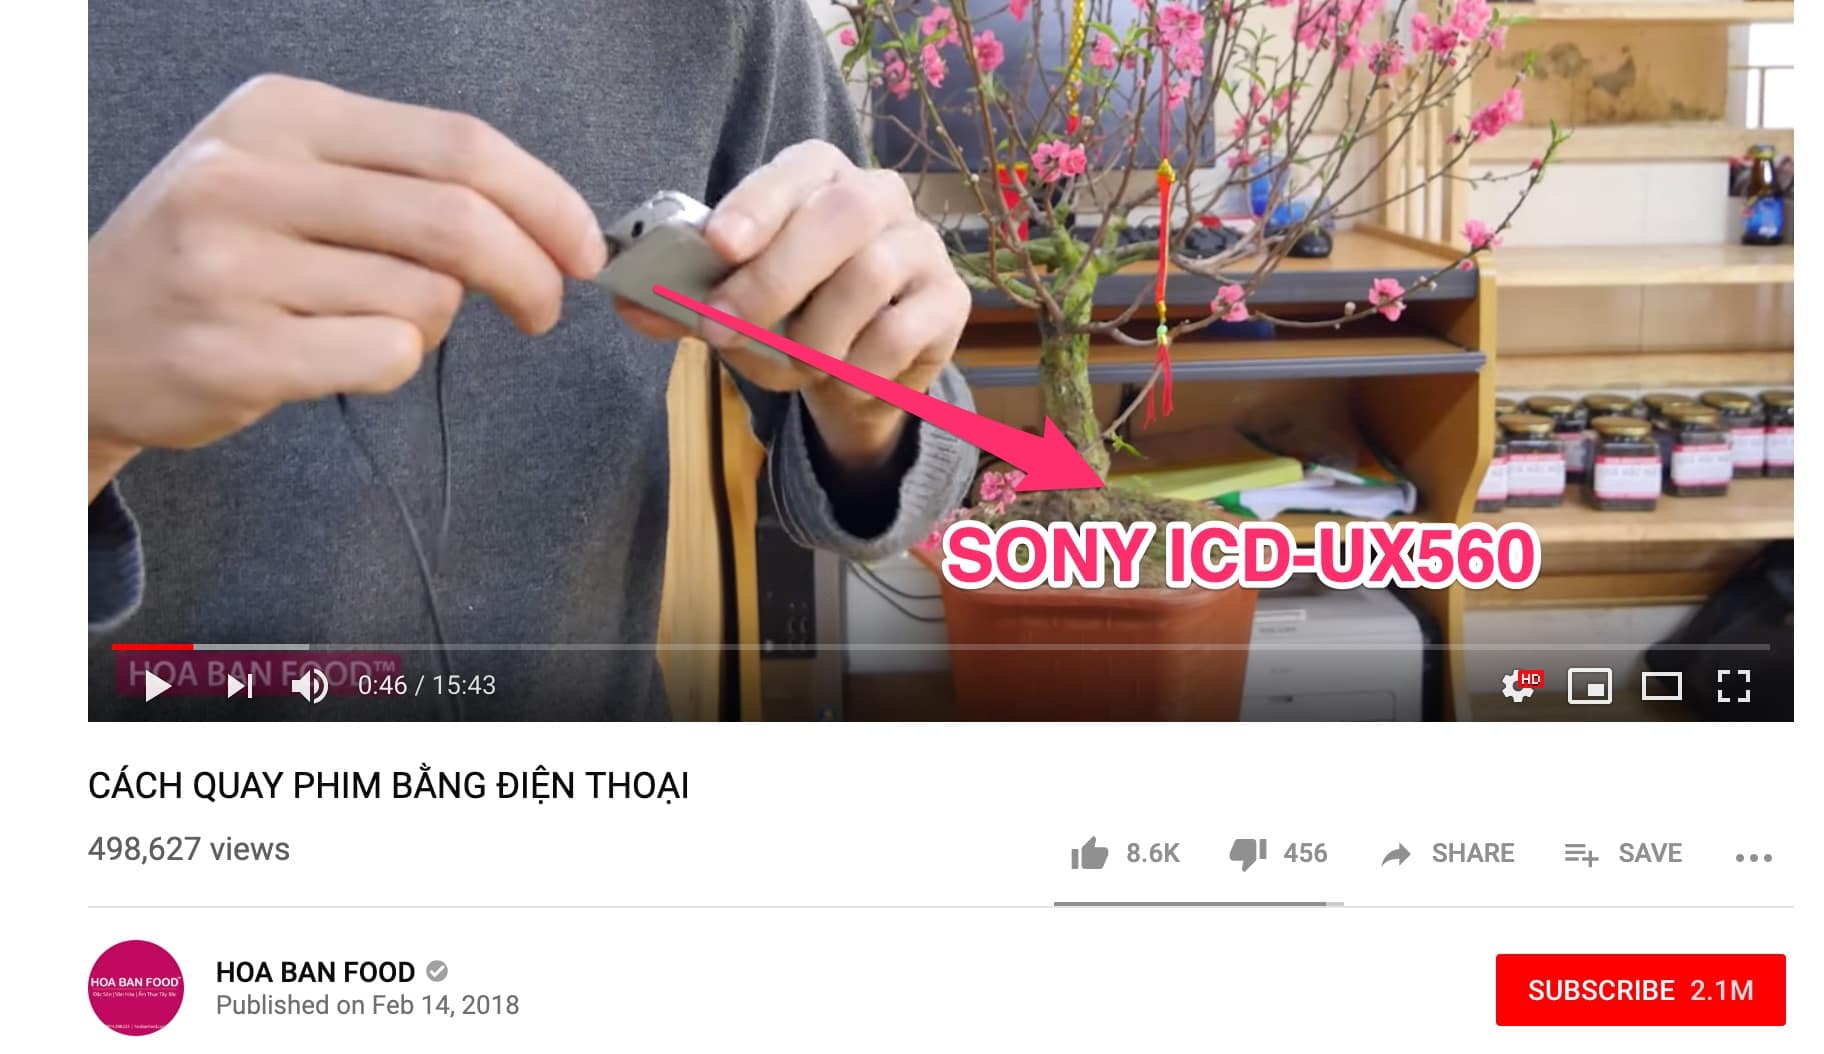 SONY UX560 - TÂN HOA BAN FOOD